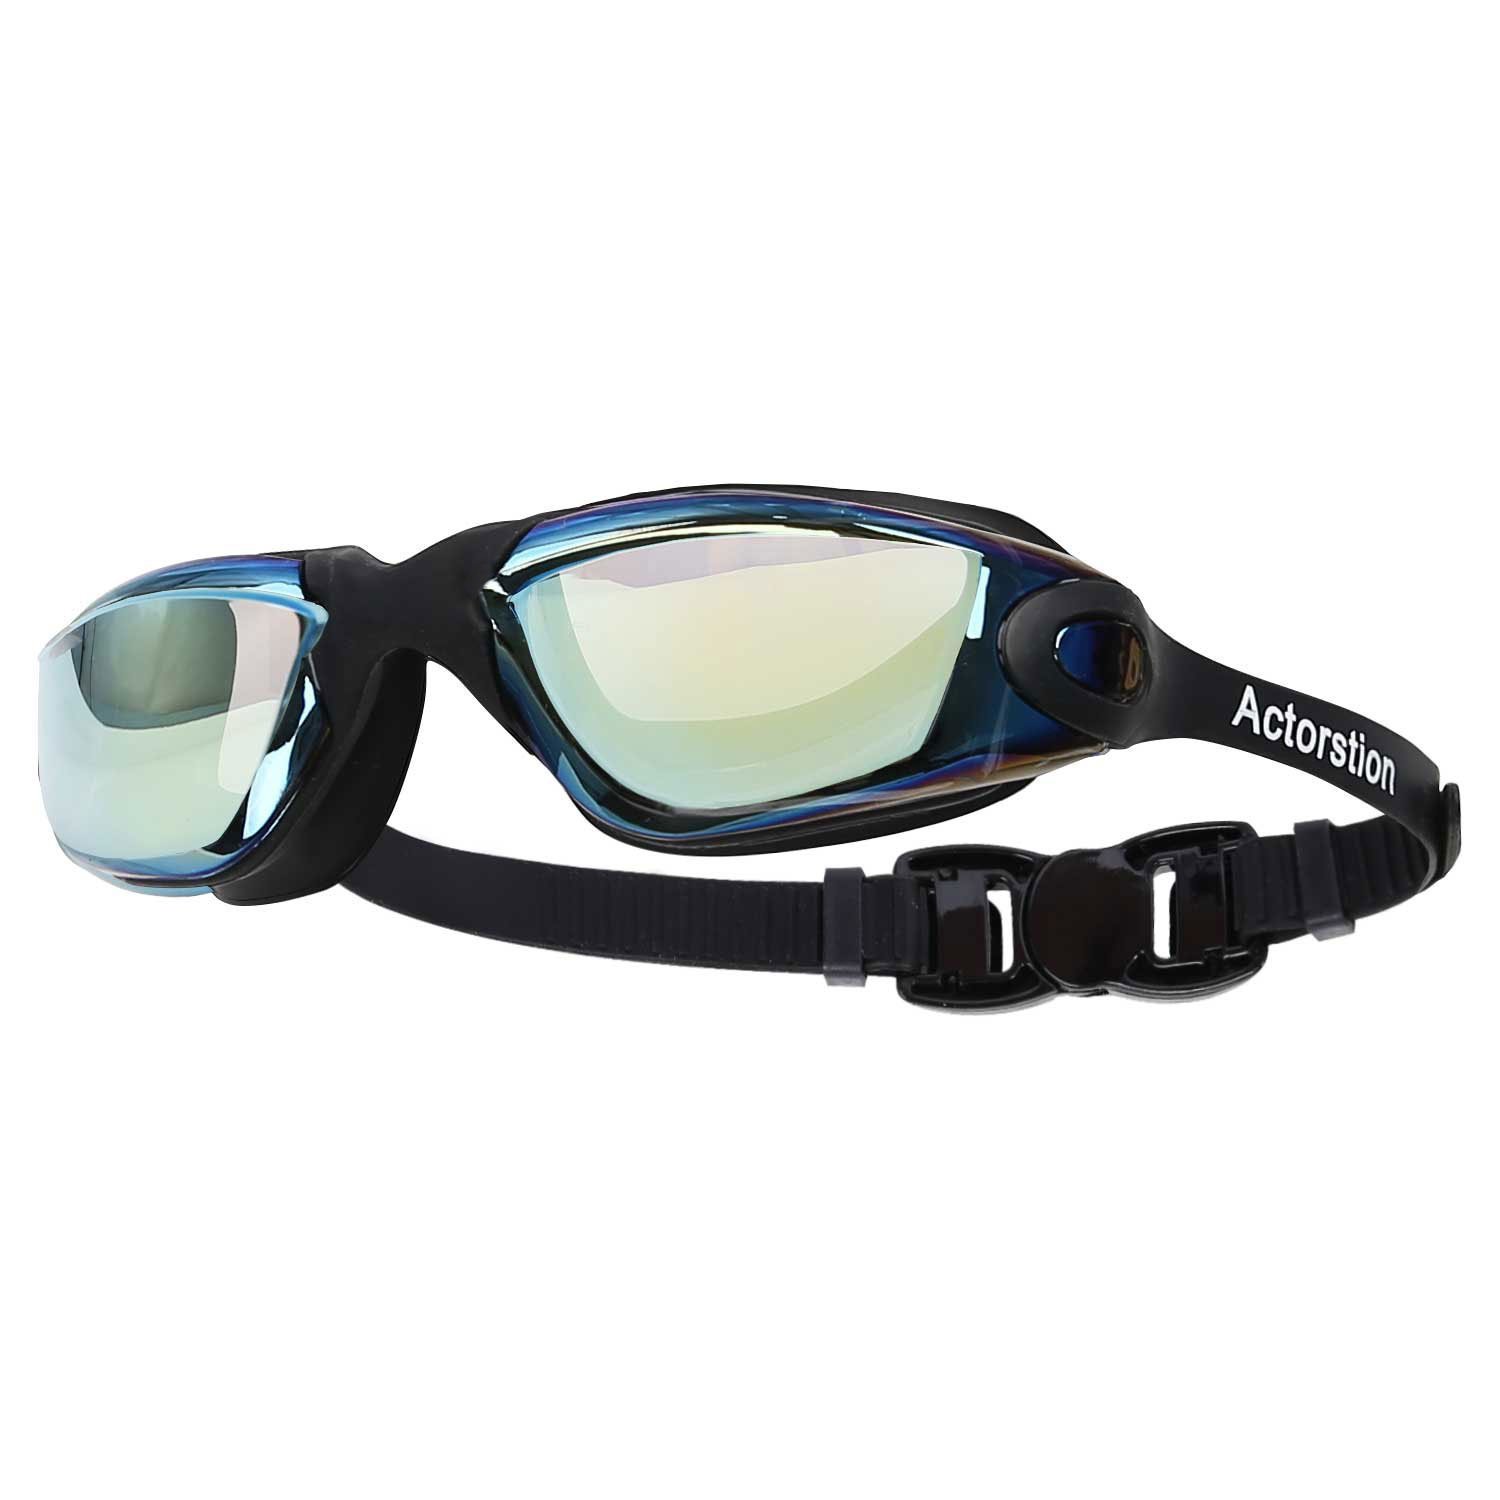 Slazenger Goggle senior biofuse ✔ protección ultravioleta ✔ tintadas ✔ ajustable Nuevo Top 